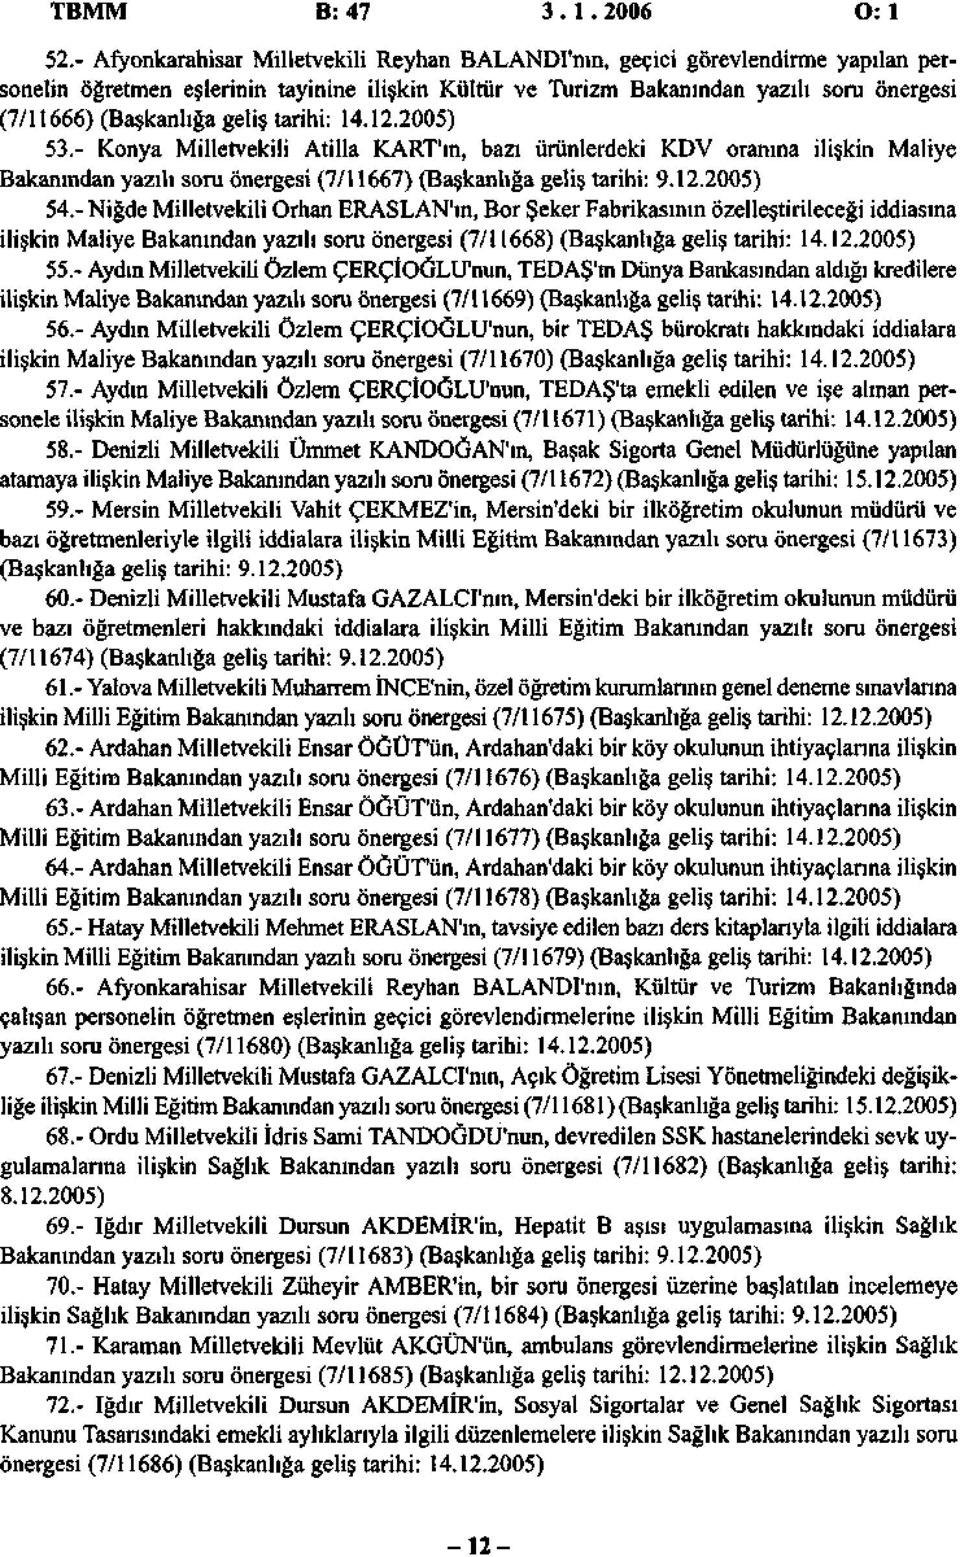 geliş tarihi: 14.12.2005) 53.- Konya Milletvekili Atilla KART'ın, bazı ürünlerdeki KDV oranına ilişkin Maliye Bakanından yazılı soru önergesi (7/11667) (Başkanlığa geliş tarihi: 9.12.2005) 54.